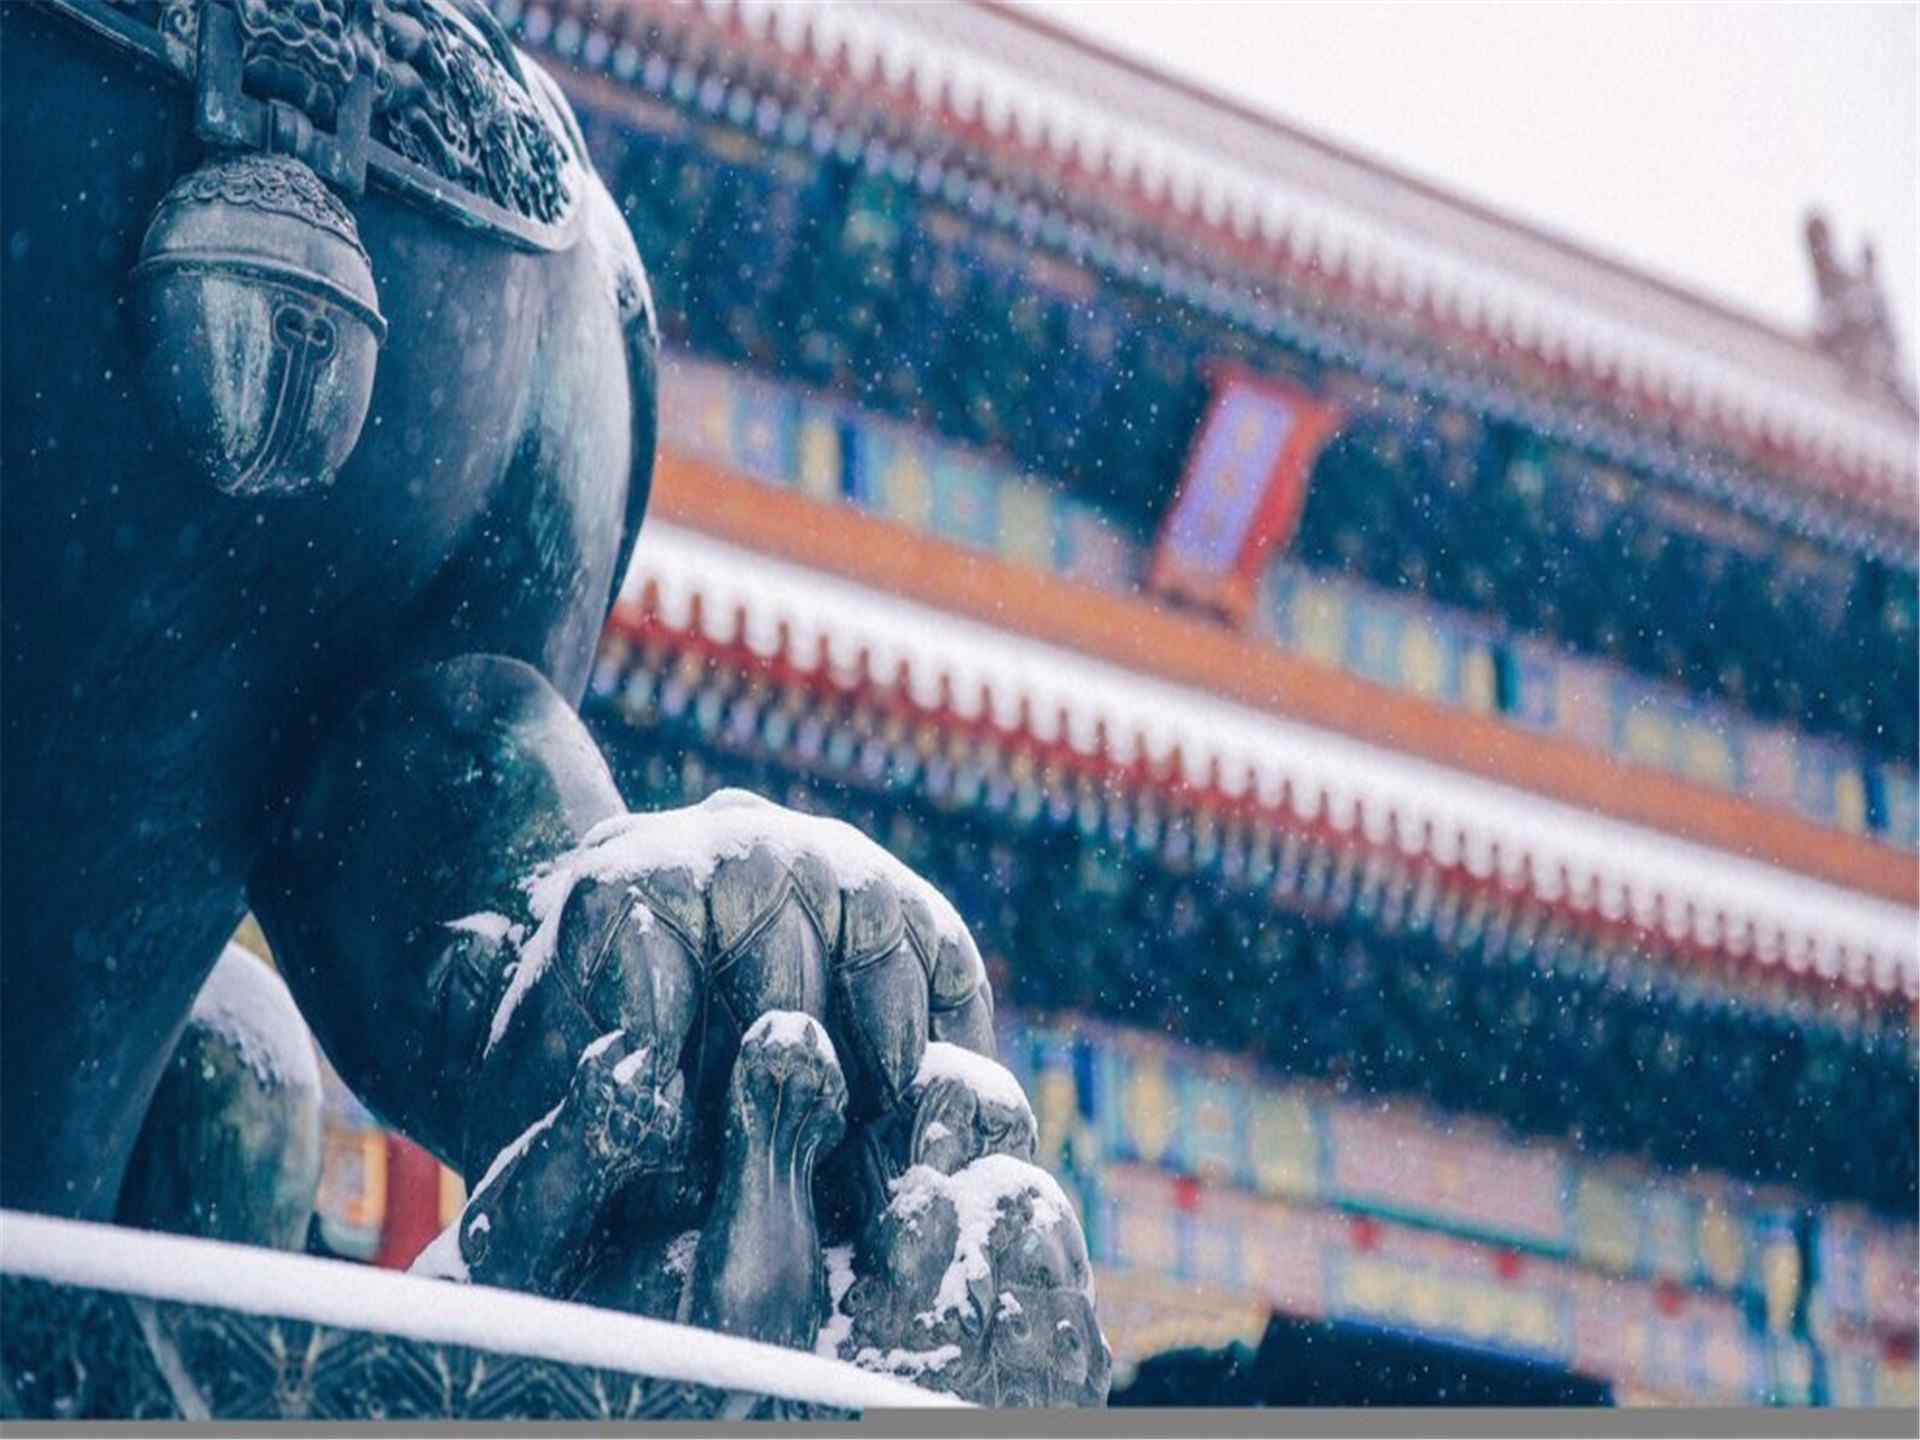 美丽的北京故宫雪景图片桌面壁纸